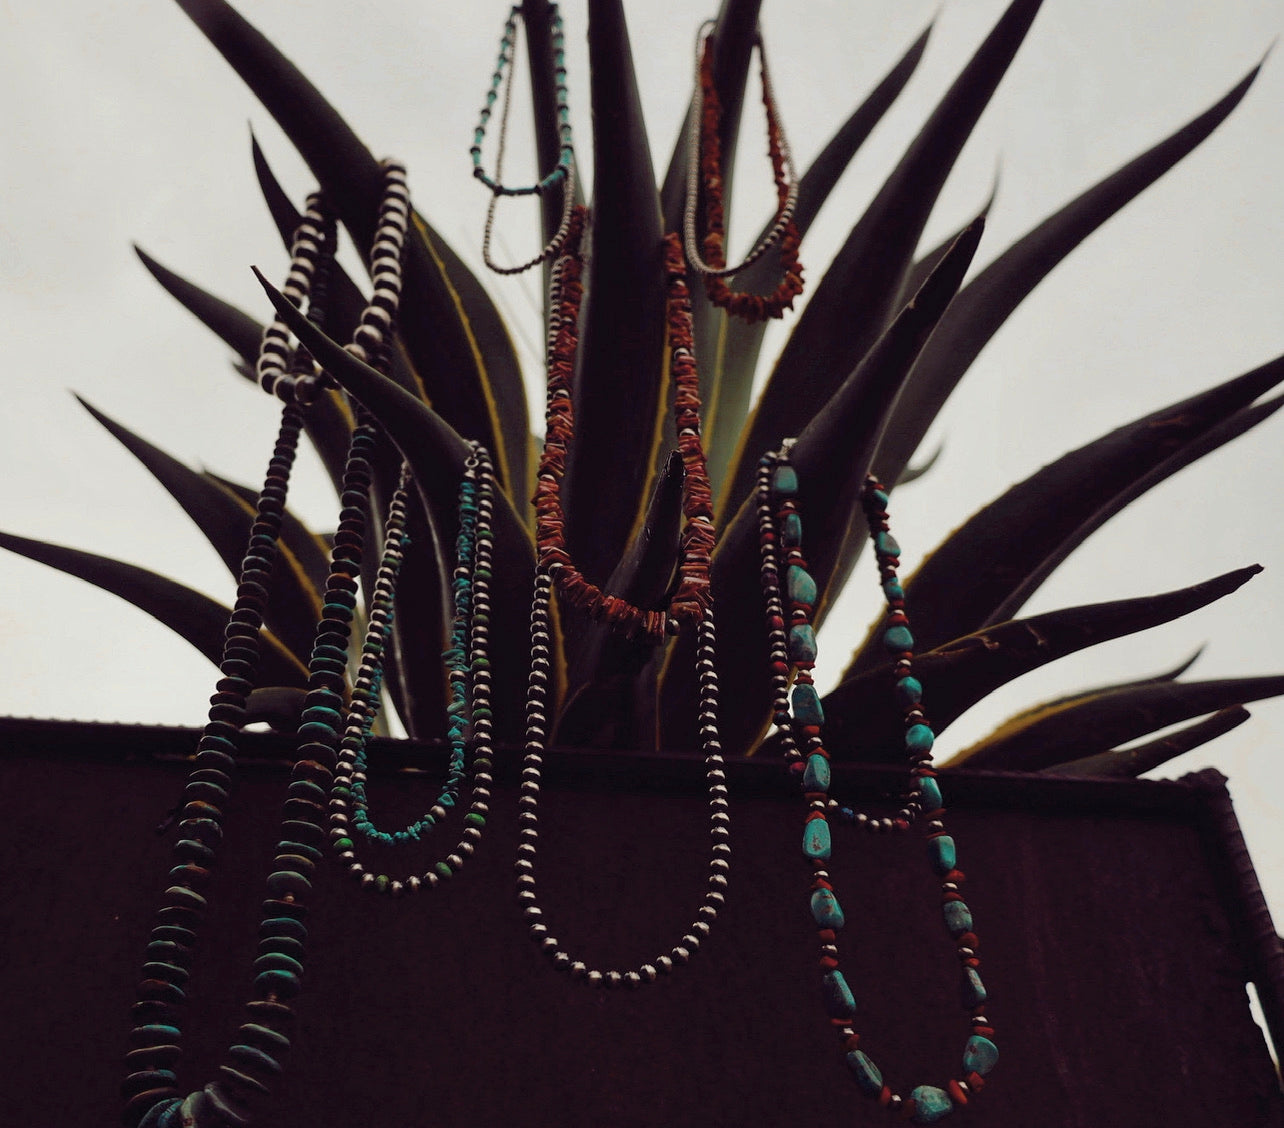 Variety “Navajo Pearl" Necklaces